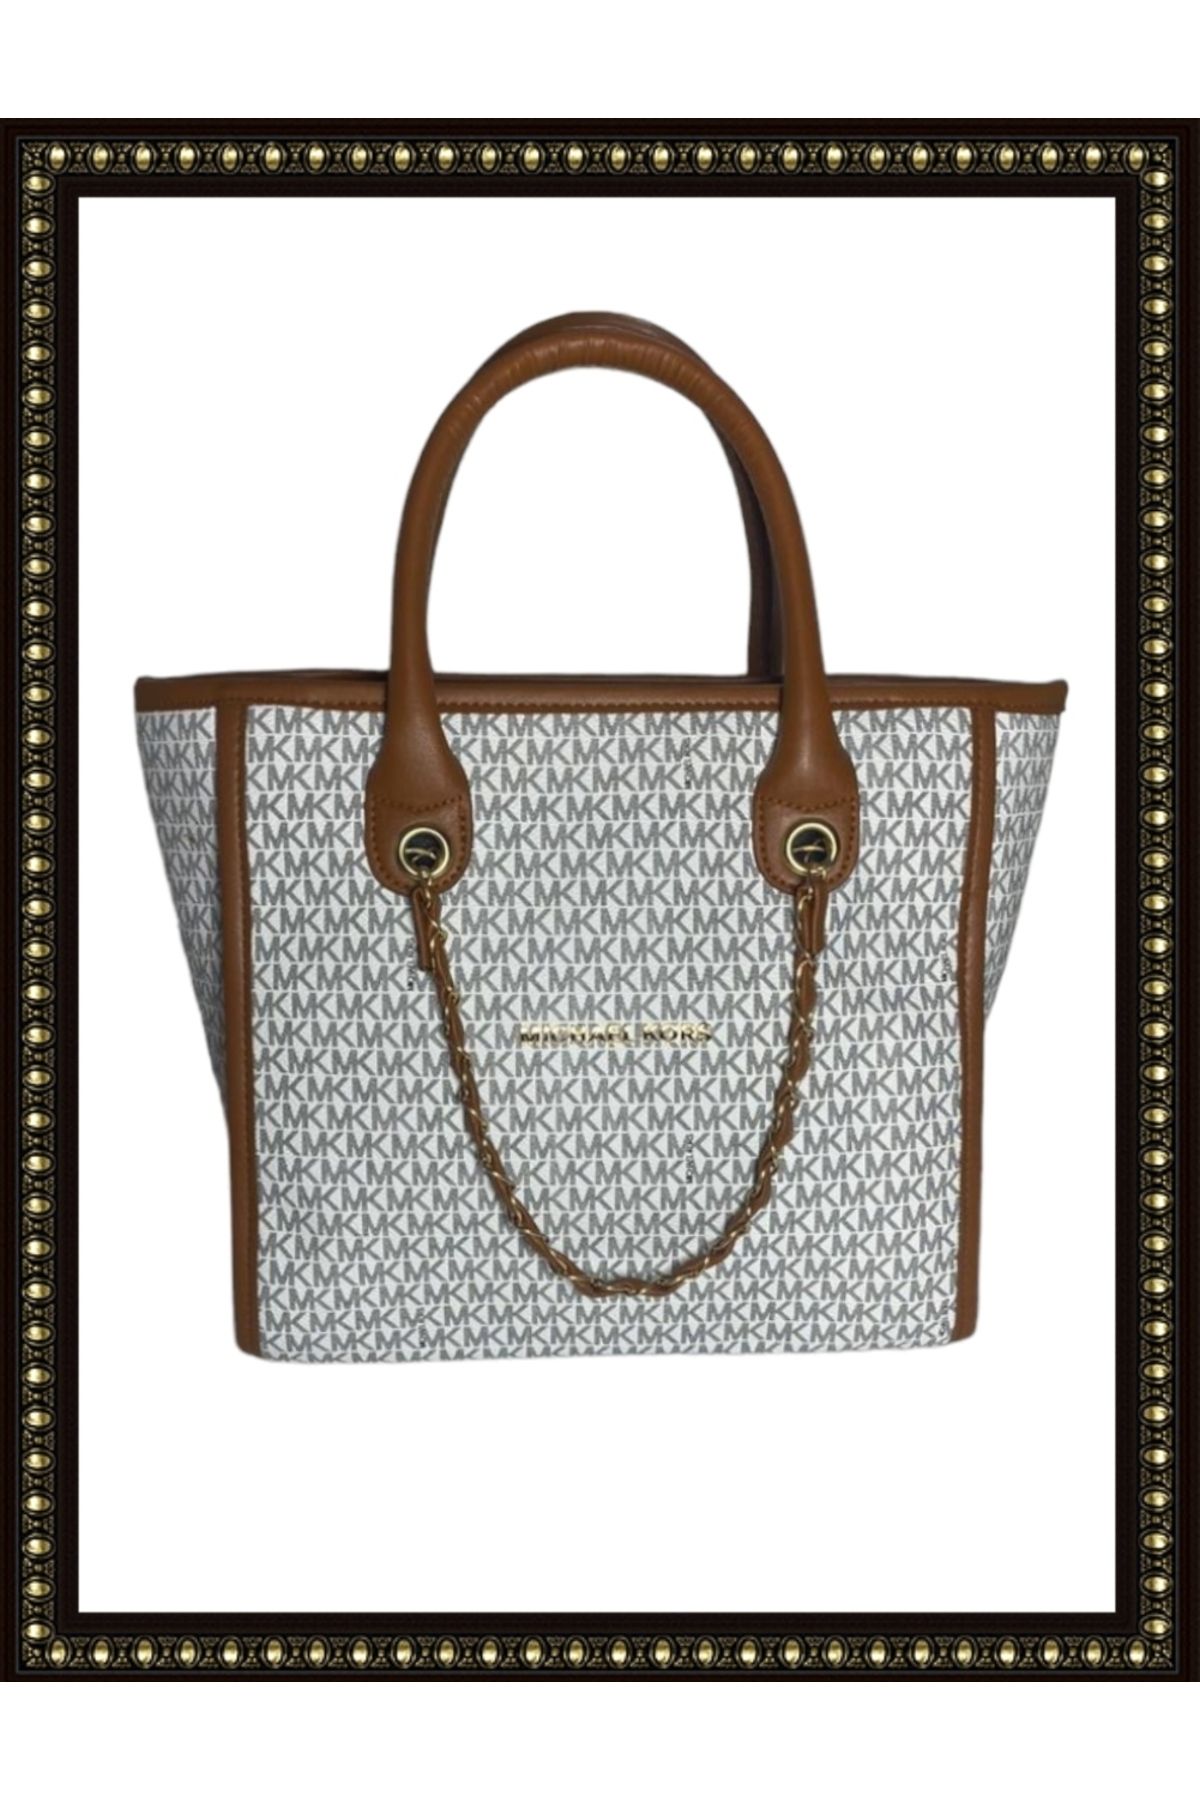 Buy perfect leather Women Grey Shoulder Bag Grey Online @ Best Price in  India | Flipkart.com